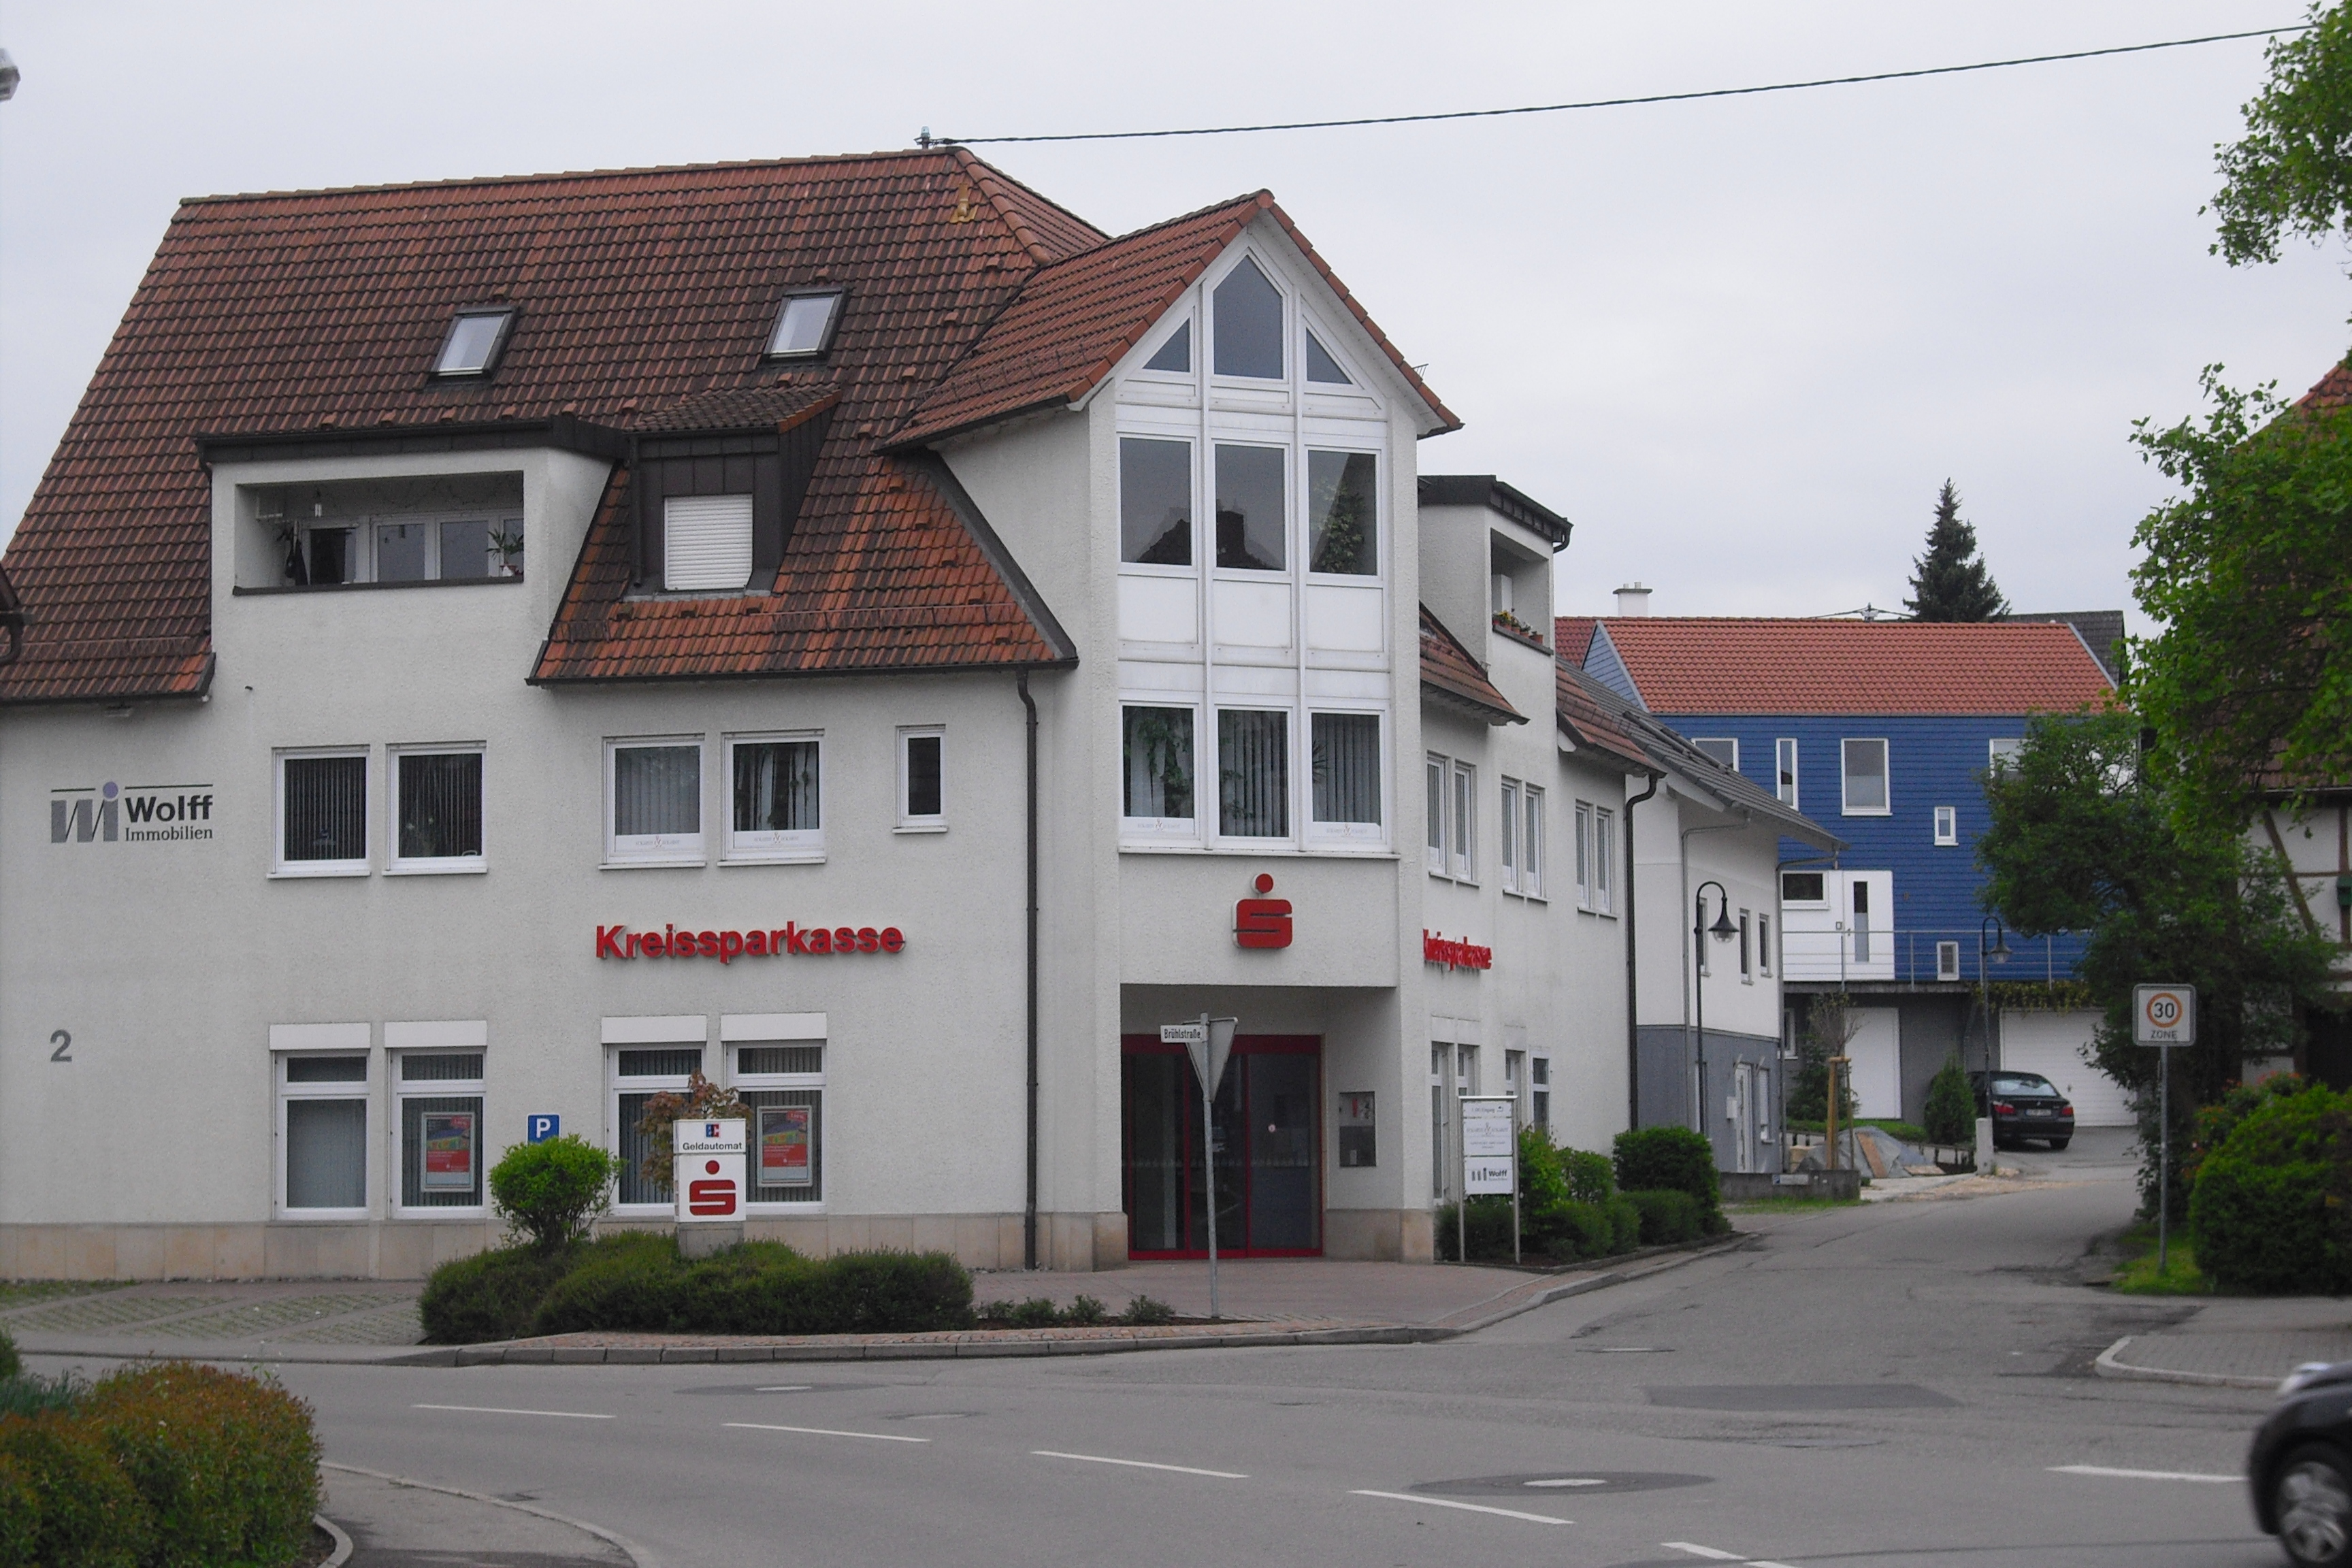 Bild 1 Kreissparkasse Reutlingen in Walddorfhäslach